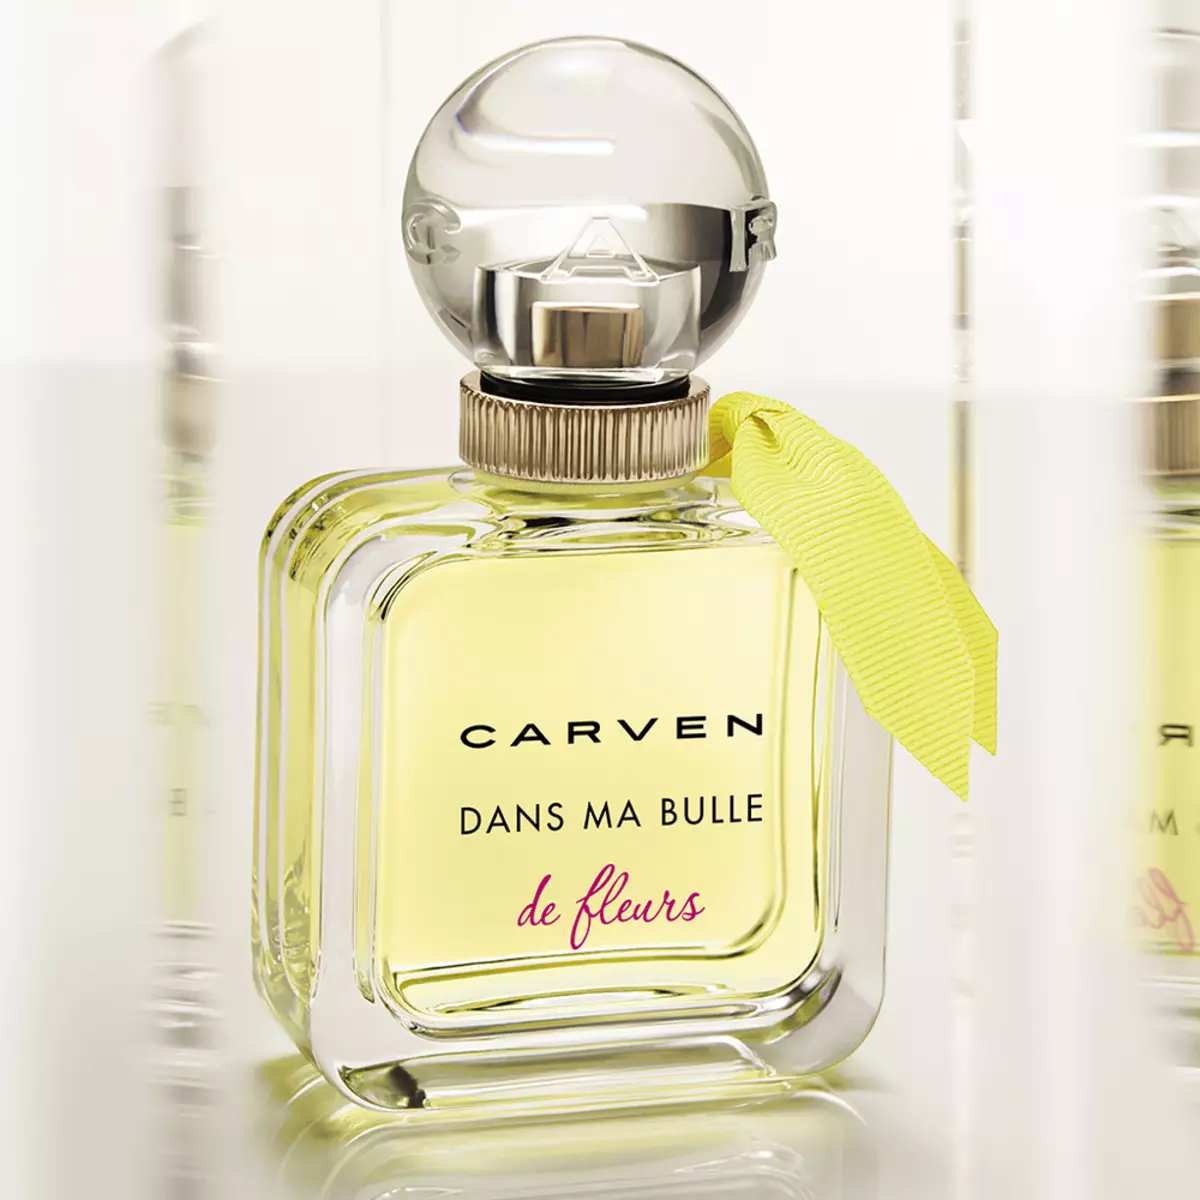 Αρώματα Carven: Γυναικεία αρώματα Le Parfum, L'Eau de Toilette και Dans MA Bulle, Αρωματοποιία Νερό για τους άνδρες 25267_9